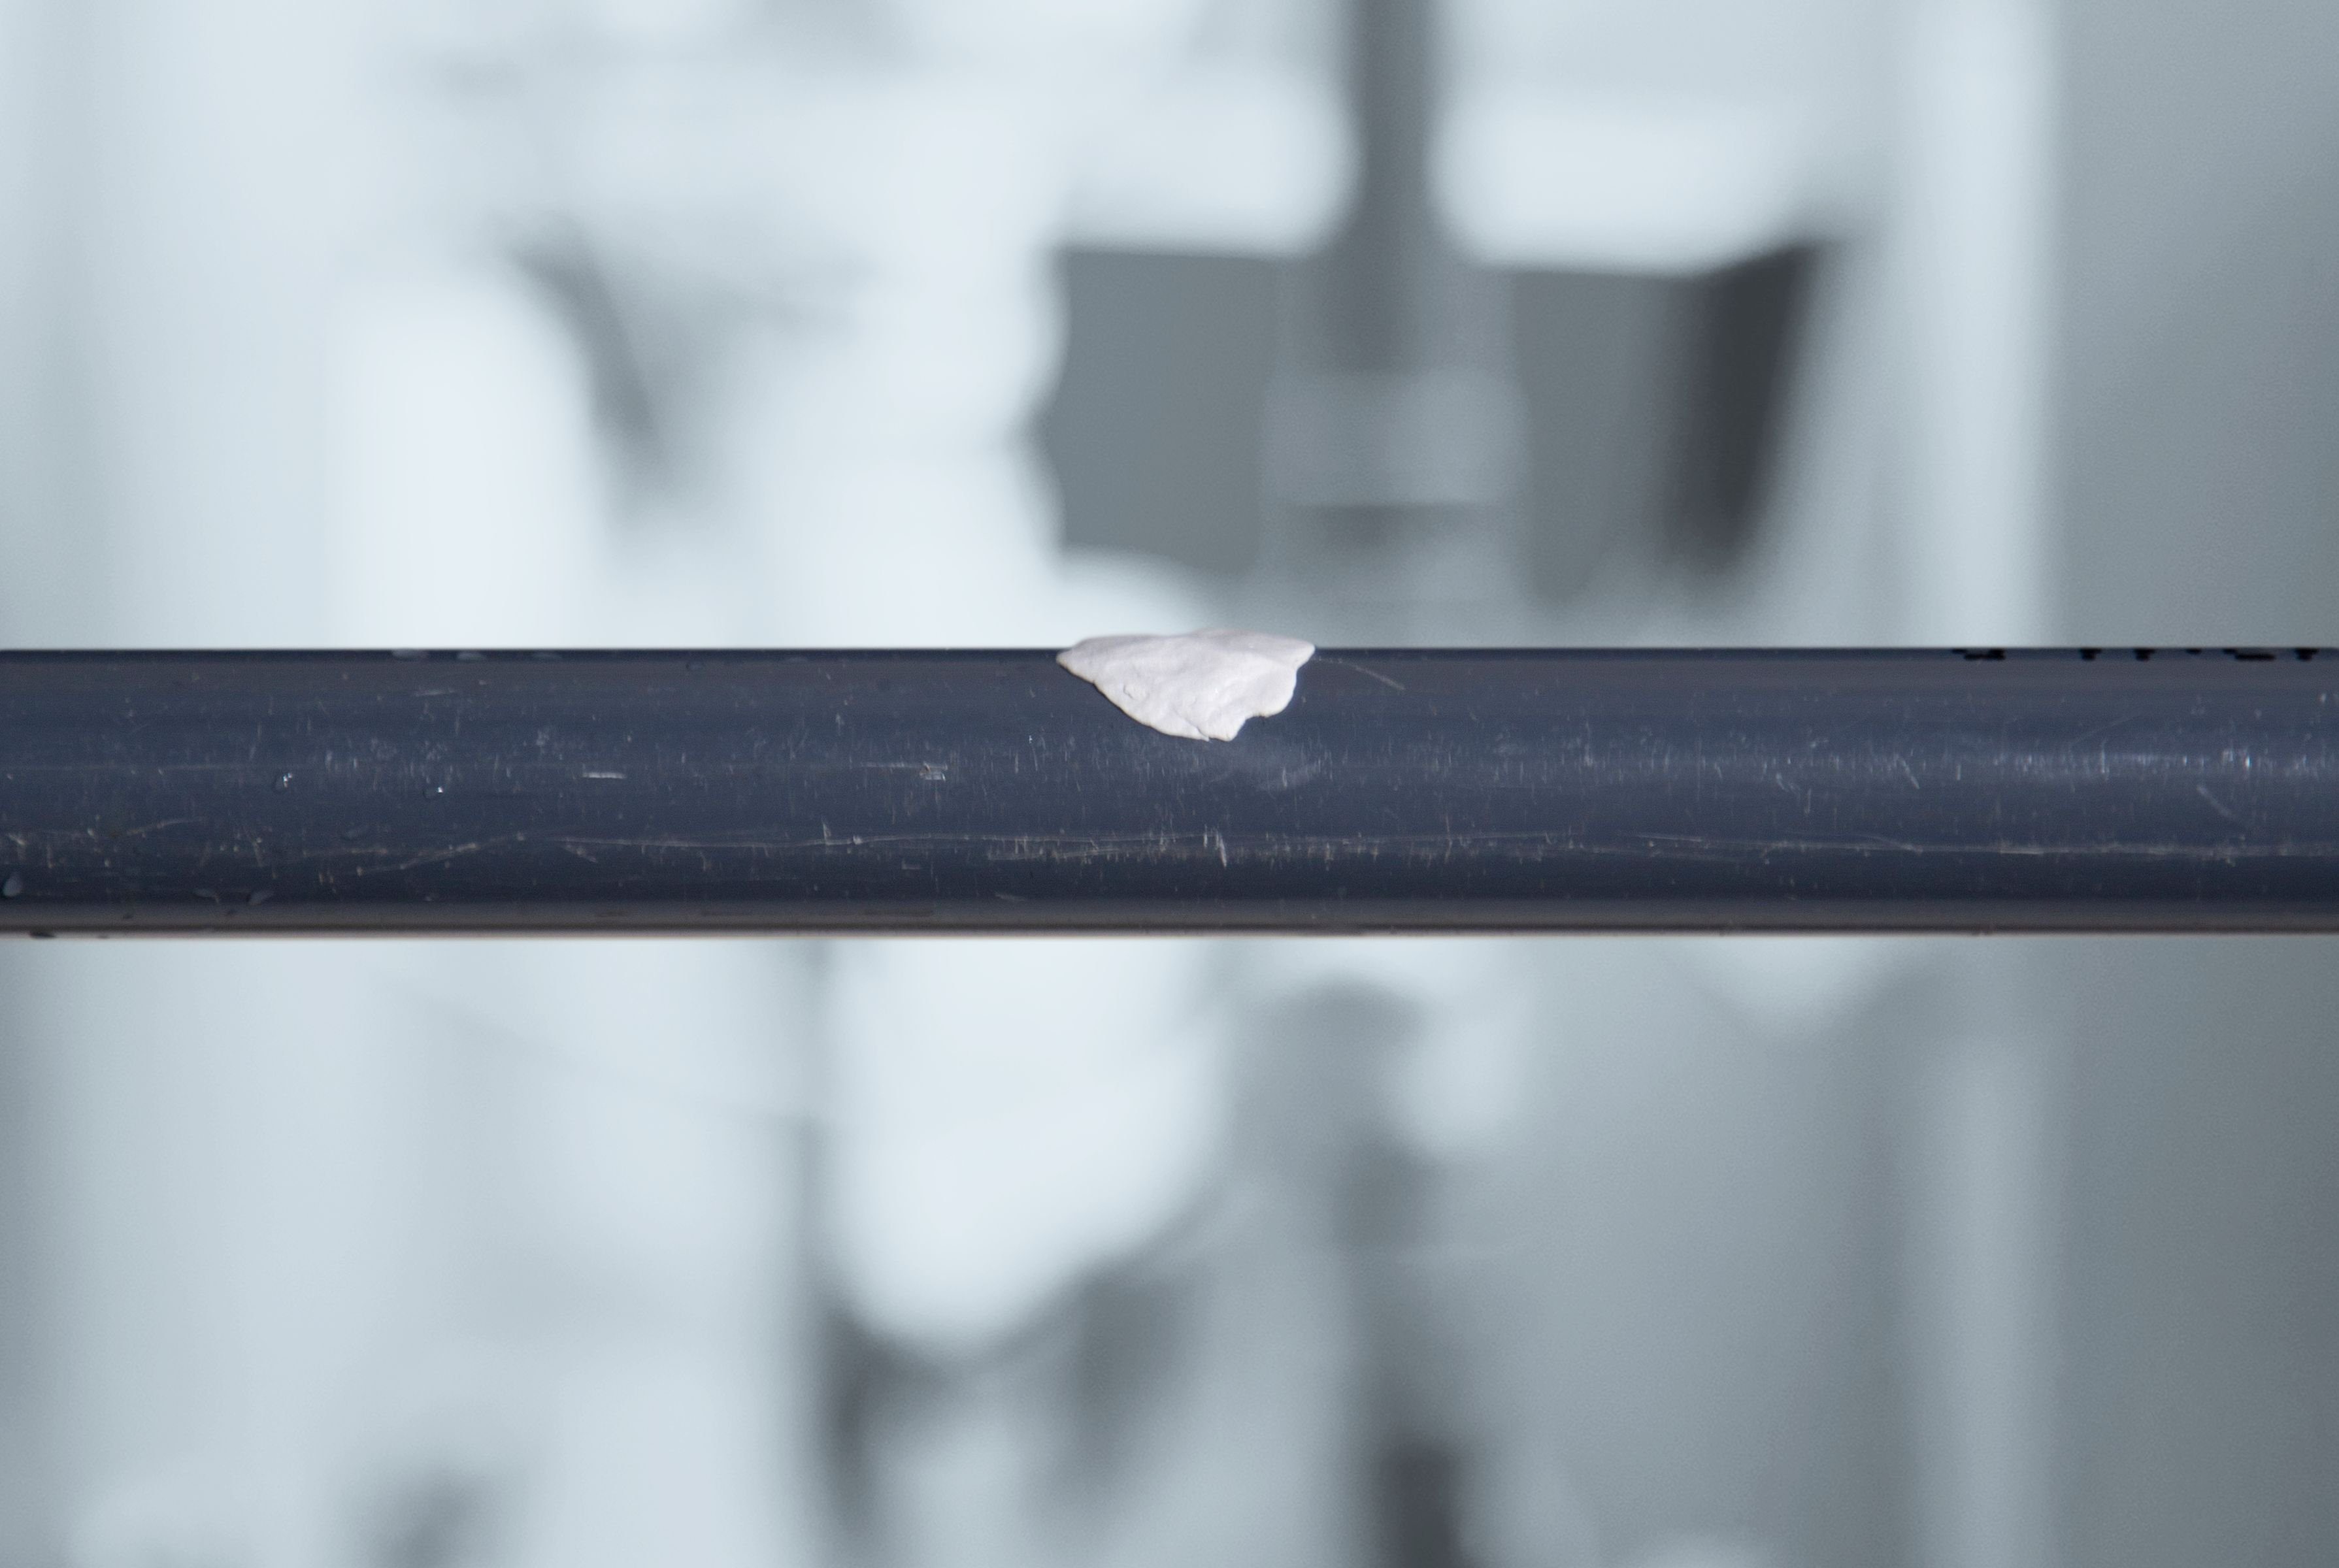 WEICON Reparatur-Set Pipe Repair-Kit, und x Rohre 5 cm Leitungen beschädigter 3,5 Notfall-Reparatur m